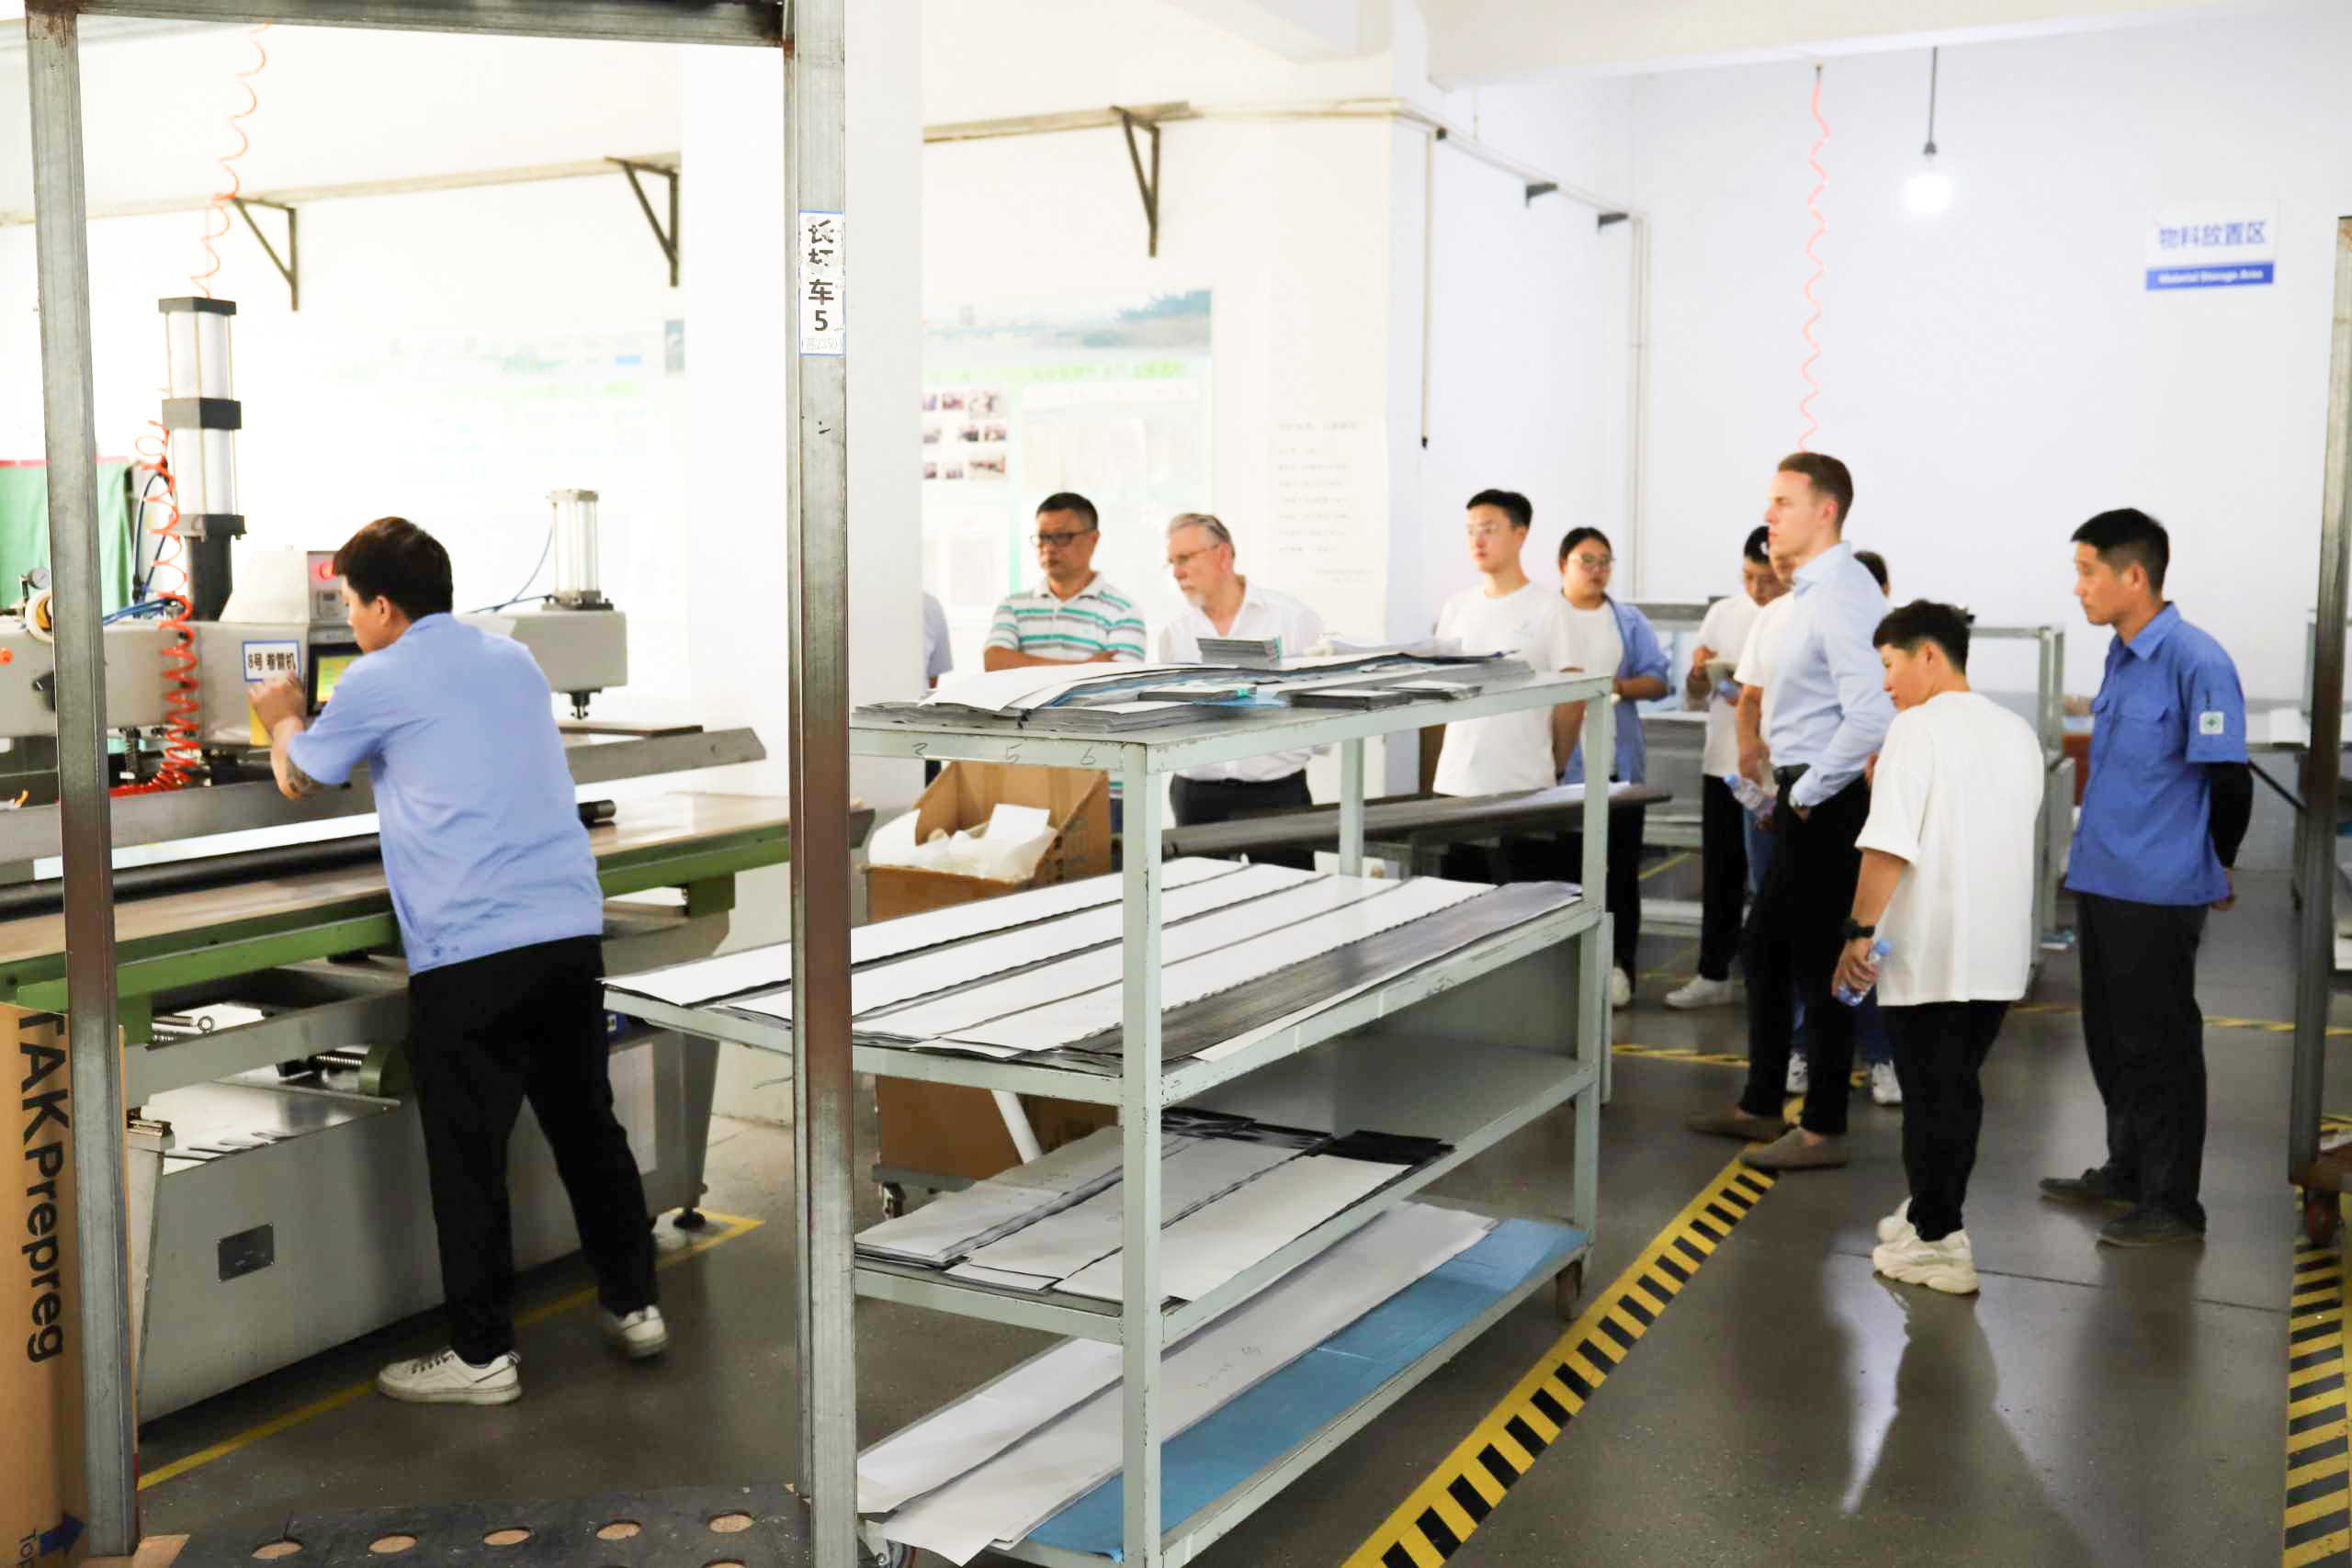 Parceiro alemão de longa data visita nossa fábrica na China para fortalecer laços comerciais